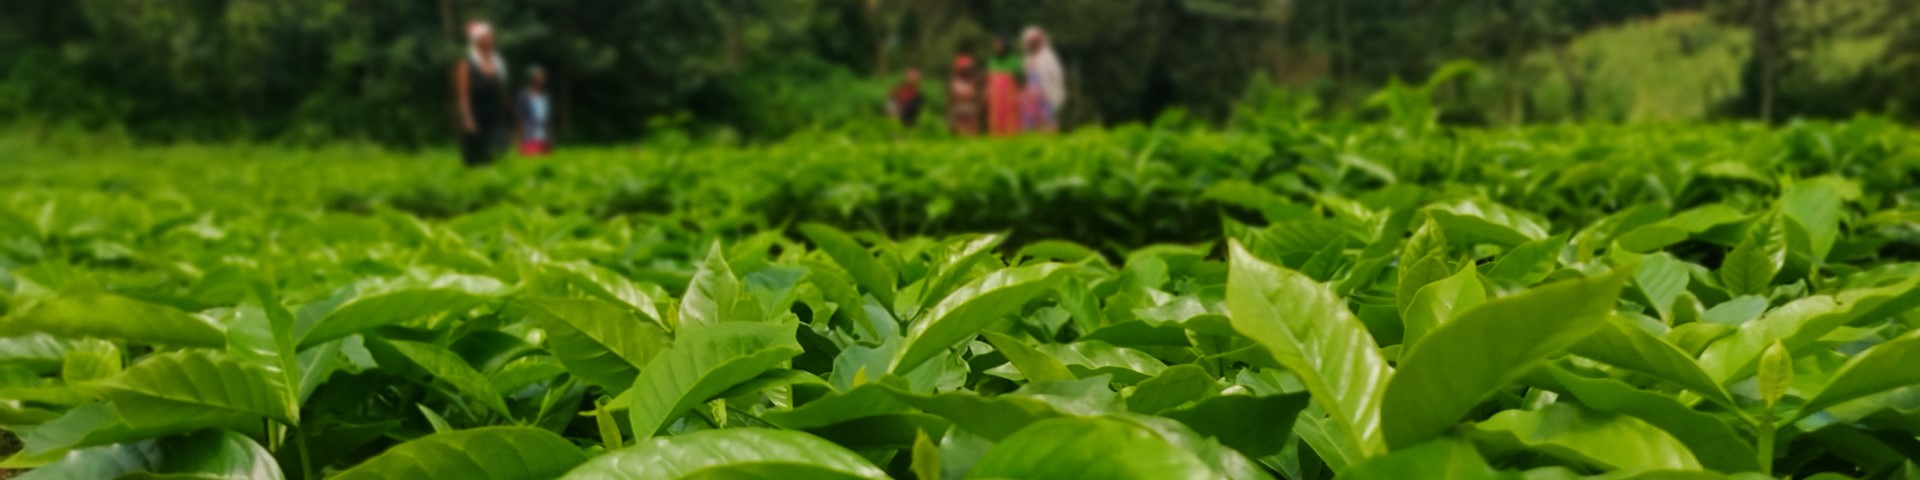 Ein Feld mit jungen Kaffeepflanzen. Im Hintergrund sind mehrere Personen schemenhaft zu erkennen.